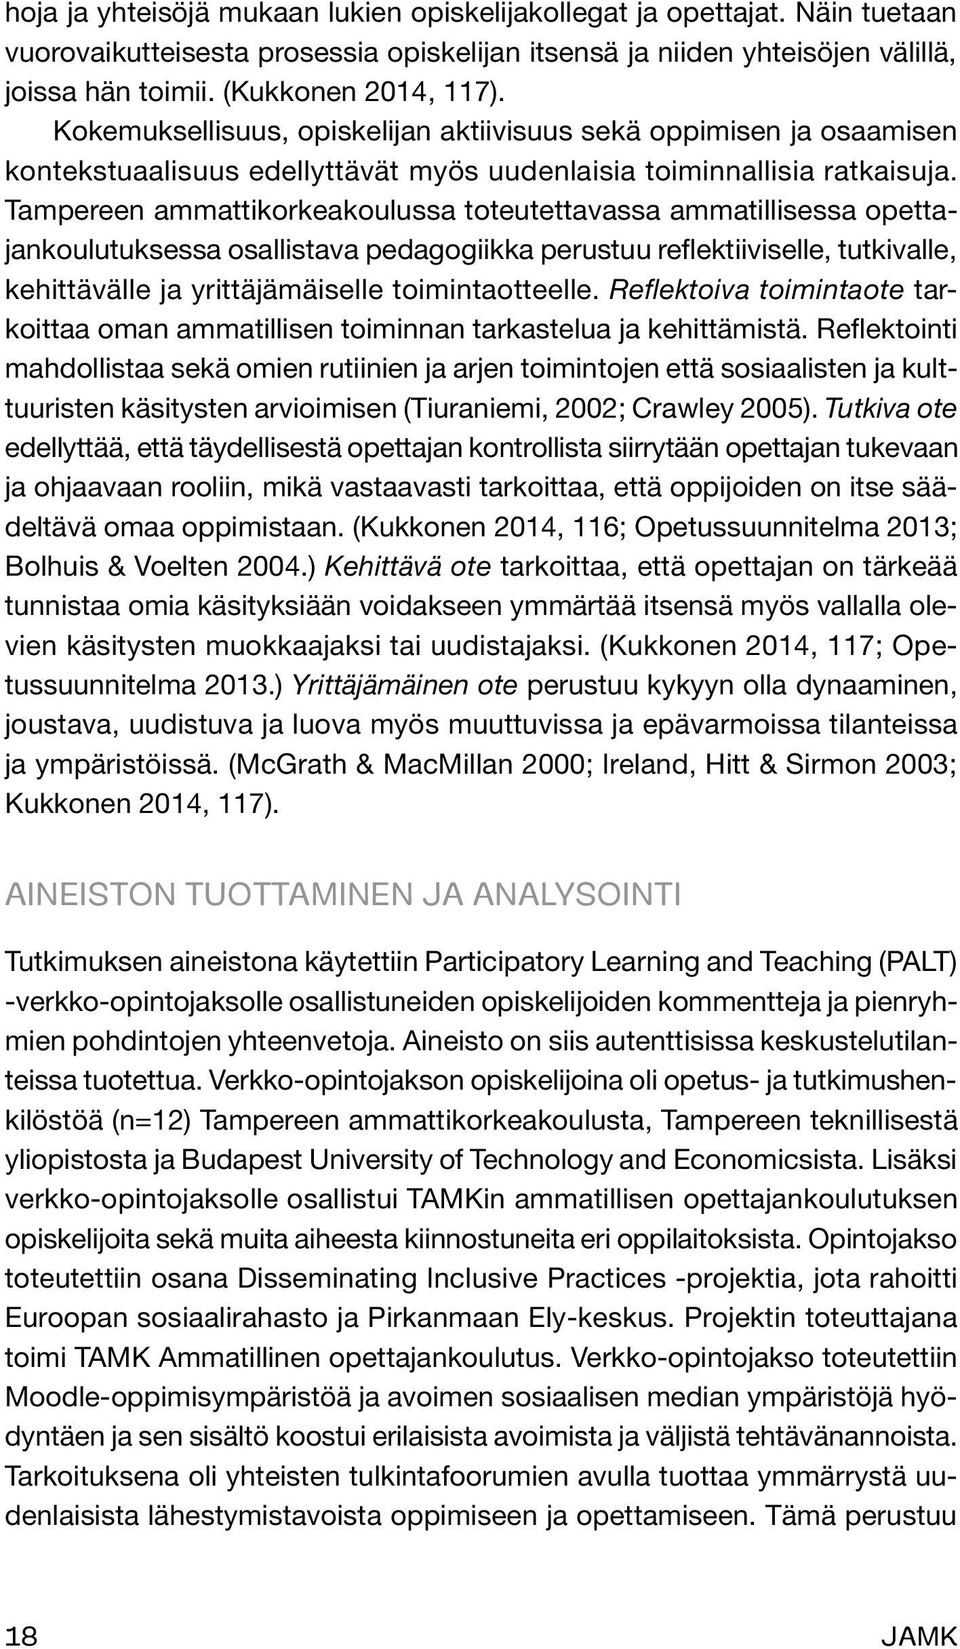 Tampereen ammattikorkeakoulussa toteutettavassa ammatillisessa opettajankoulutuksessa osallistava pedagogiikka perustuu reflektiiviselle, tutkivalle, kehittävälle ja yrittäjämäiselle toimintaotteelle.